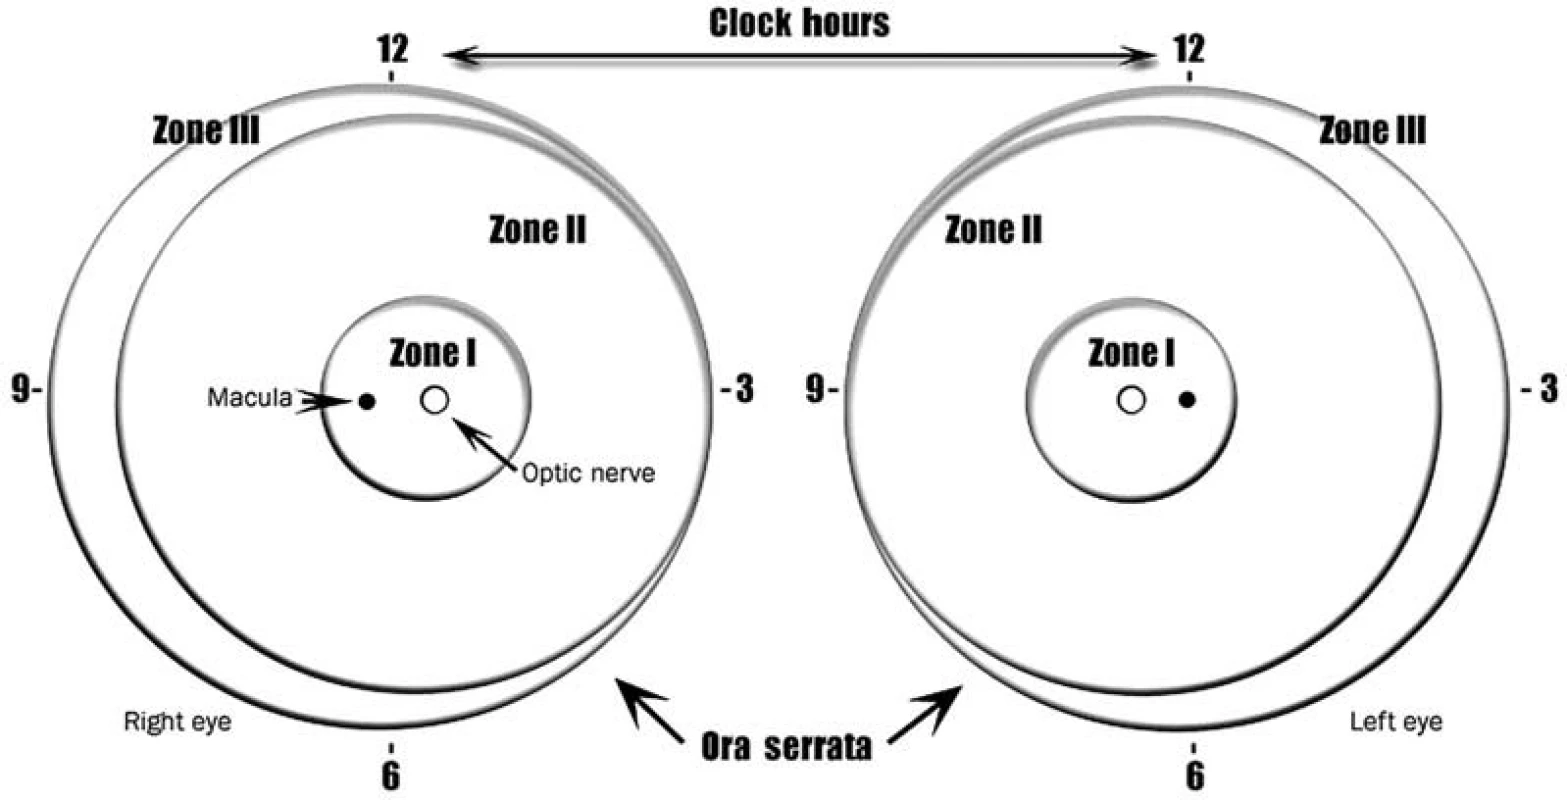 Schéma sietnice pravého a ľavého oka, znázorňujúca ohraničenie zón a číslic číselníka hodín, používané pre popis lokalizácie a rozsahu zmien pri ROP. Zóna II sa ešte rozdeľuje na centrálnu – posteriórnu časť, ktorá nalieha na zónu I a periférnu čast Zóna III sa nachádza len v temporálnej časti sietnice.